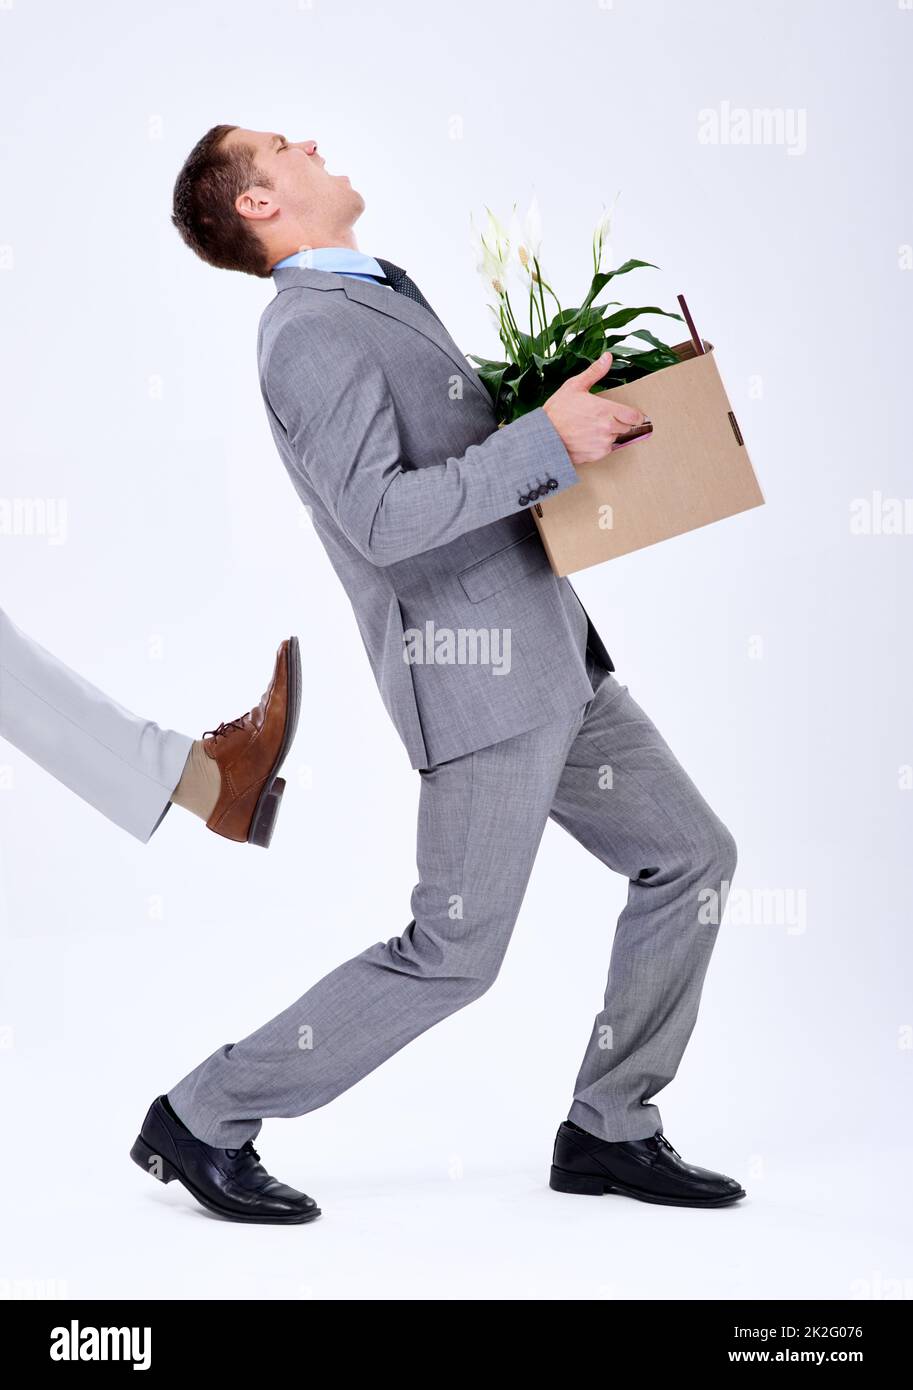 Dandogli il stivale, un giovane uomo d'affari che viene cacciato dal suo lavoro. Foto Stock